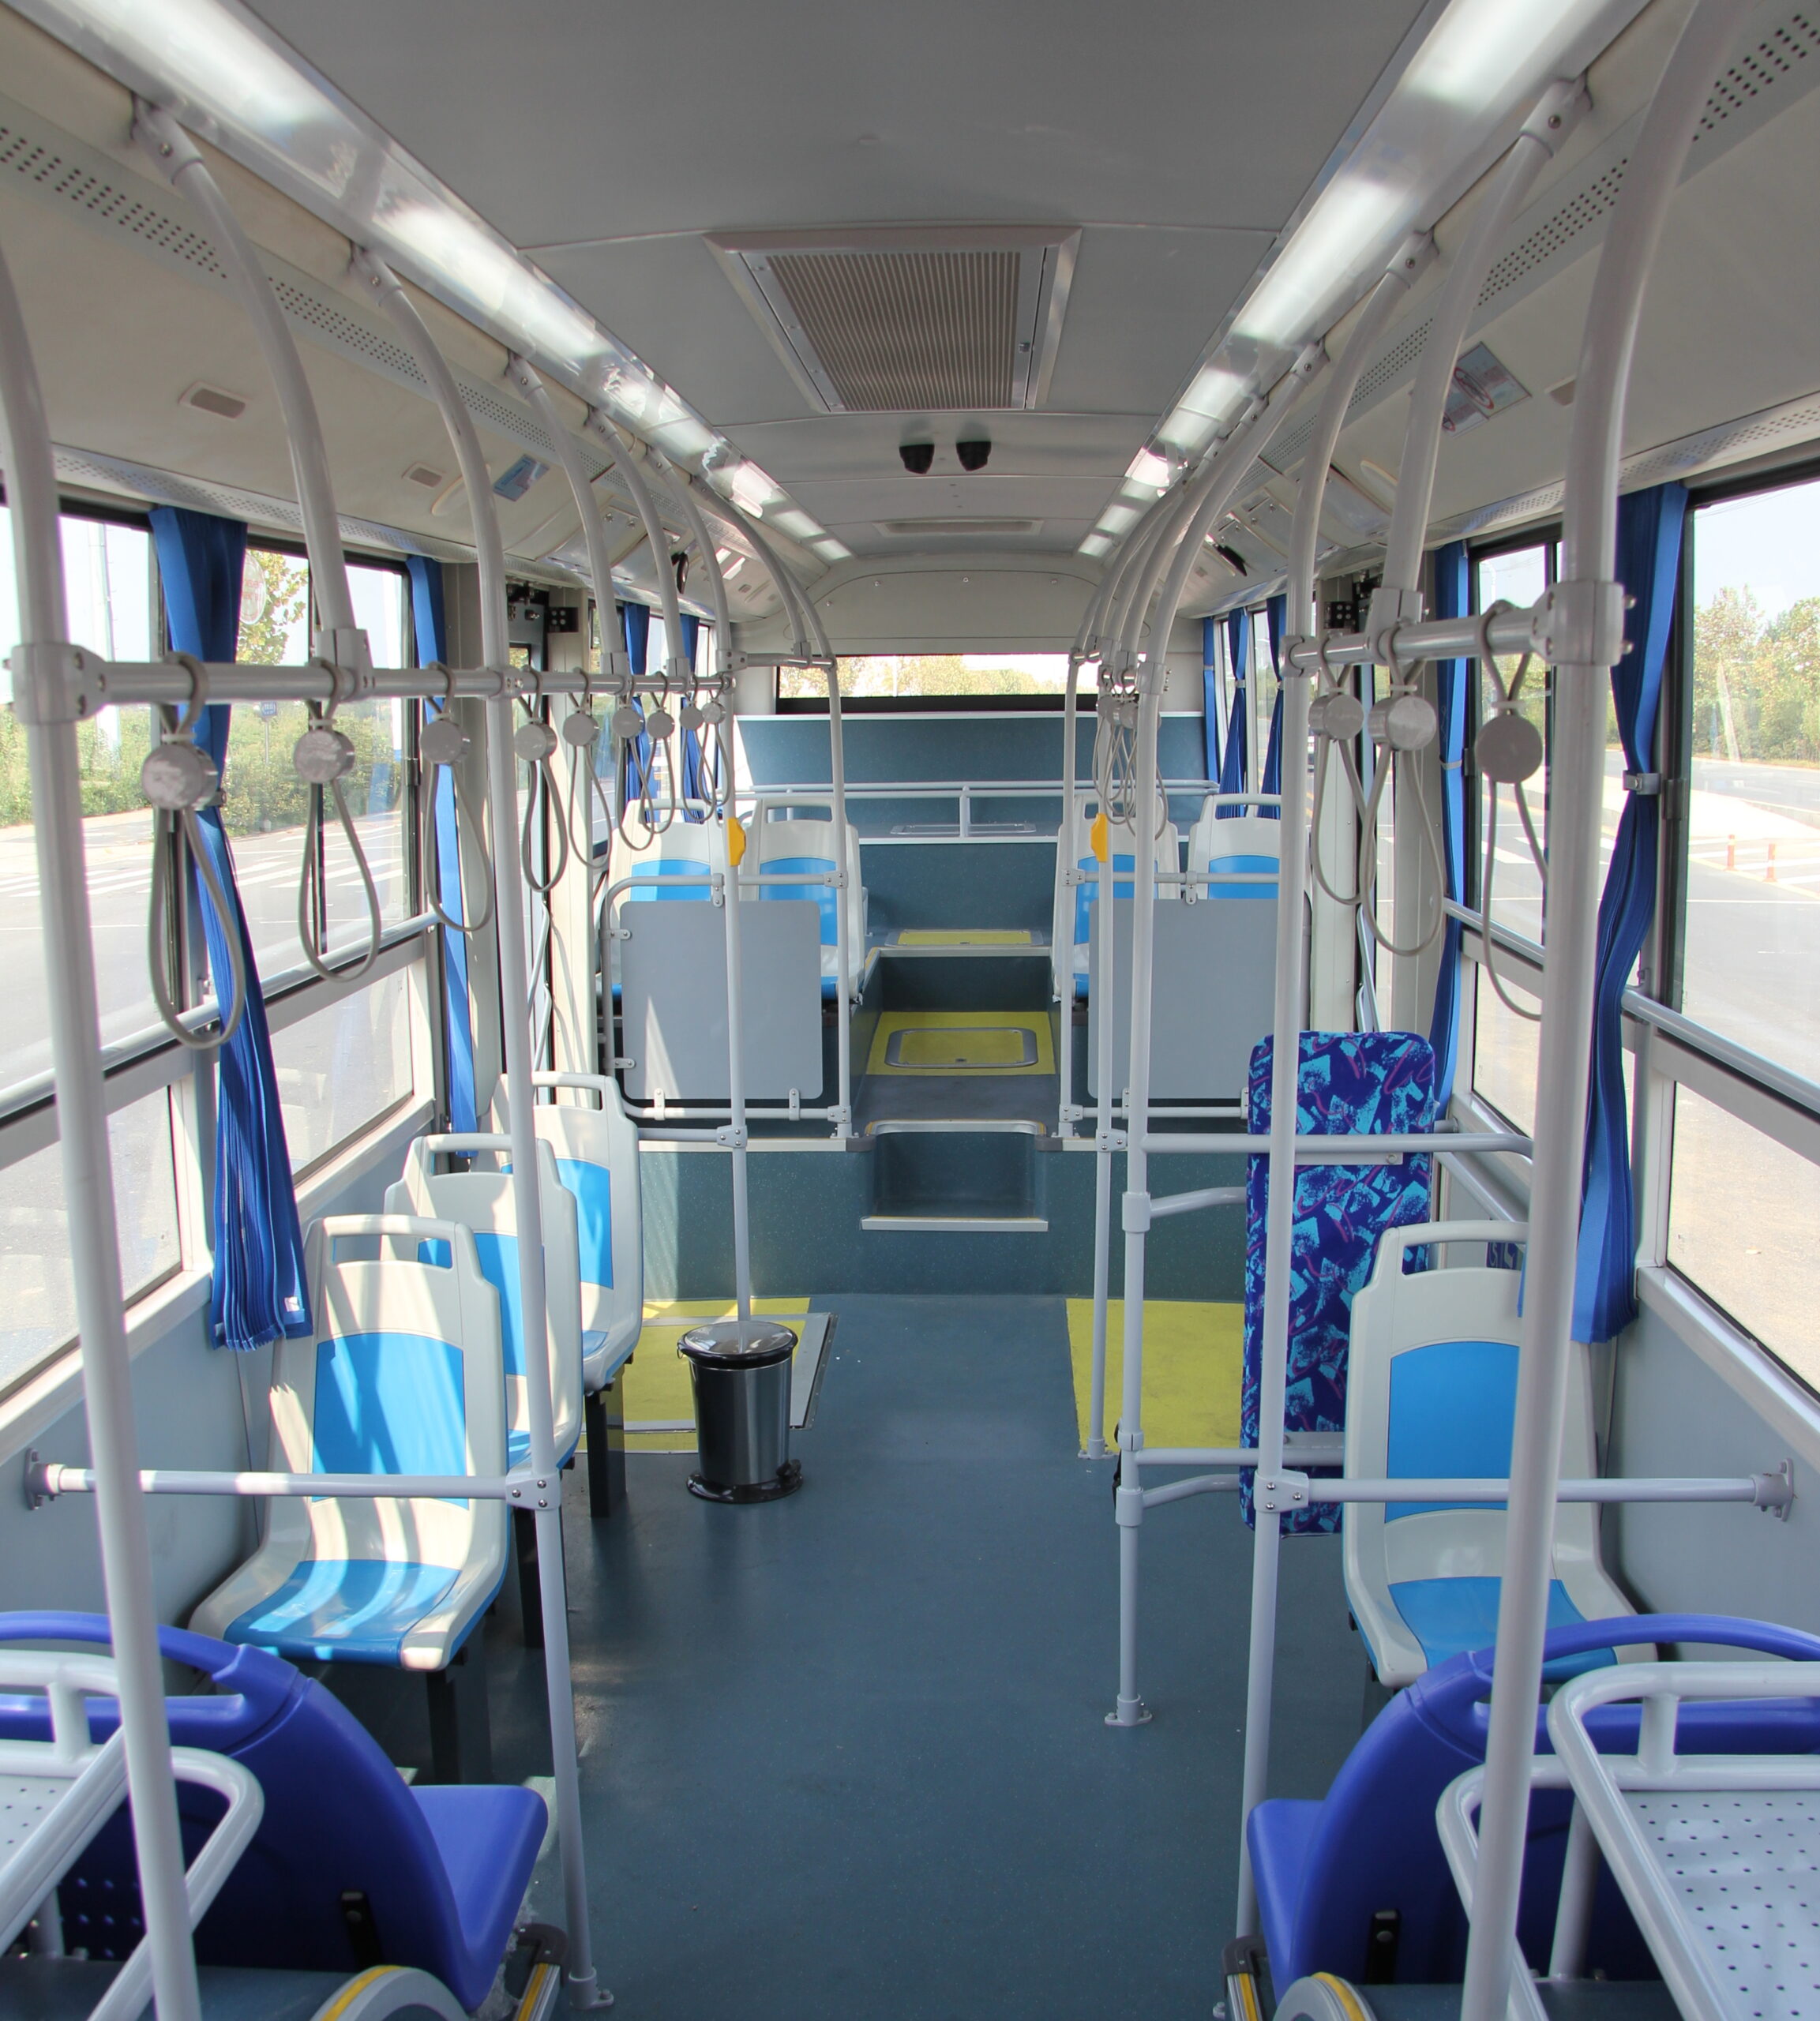 Airport Bus interior